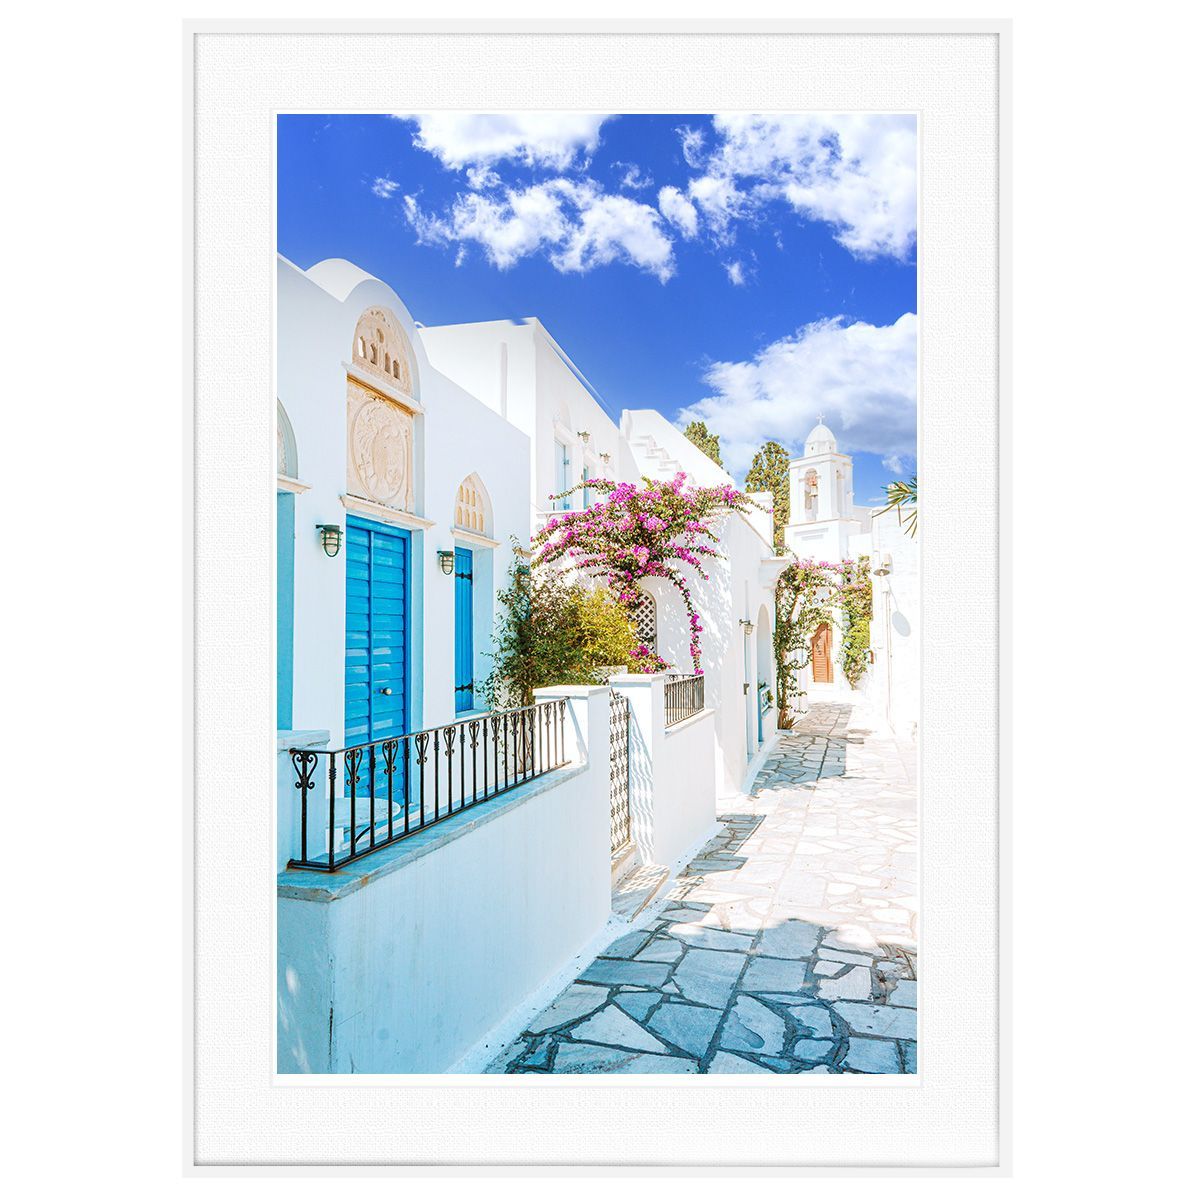 ギリシャ 風景写真 ミコノス島インテリアアートポスター額装 AS1409